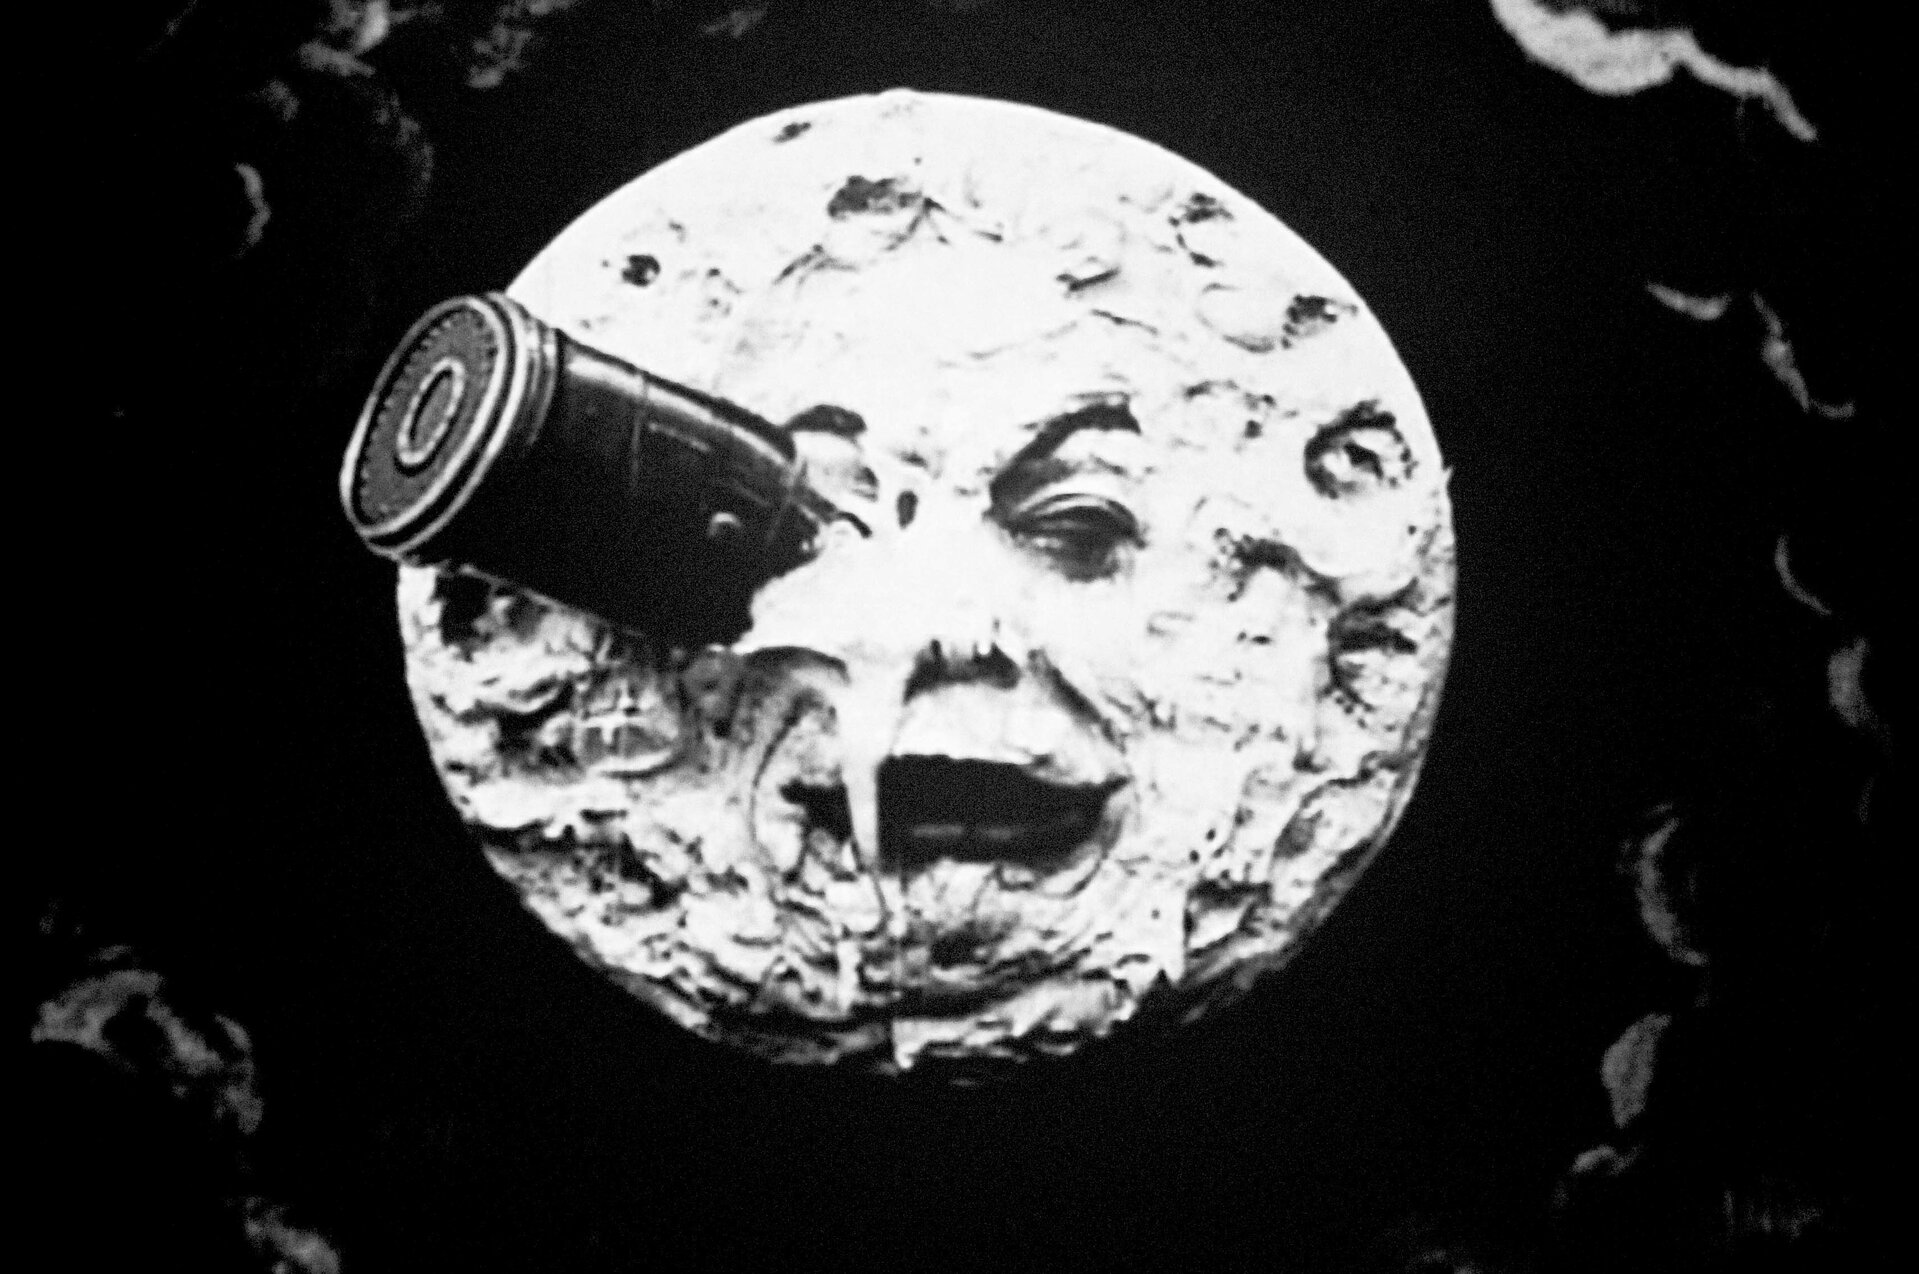 Ilustracja przedstawia kadr z filmu „Podróż na Księżyc” autorstwa Georgesa Mélièsa. Na czarno-białym zdjęciu znajduje się okrągły, pełen kraterów księżyc o ludzkiej twarz i dużych, ciemnych ustach, w którego prawym oku tkwi wbita metalowa rakieta. Jasna tafla księżyca unosi się na tle czarnego nieba z zaznaczonymi gdzieniegdzie szarymi zarysami chmur.